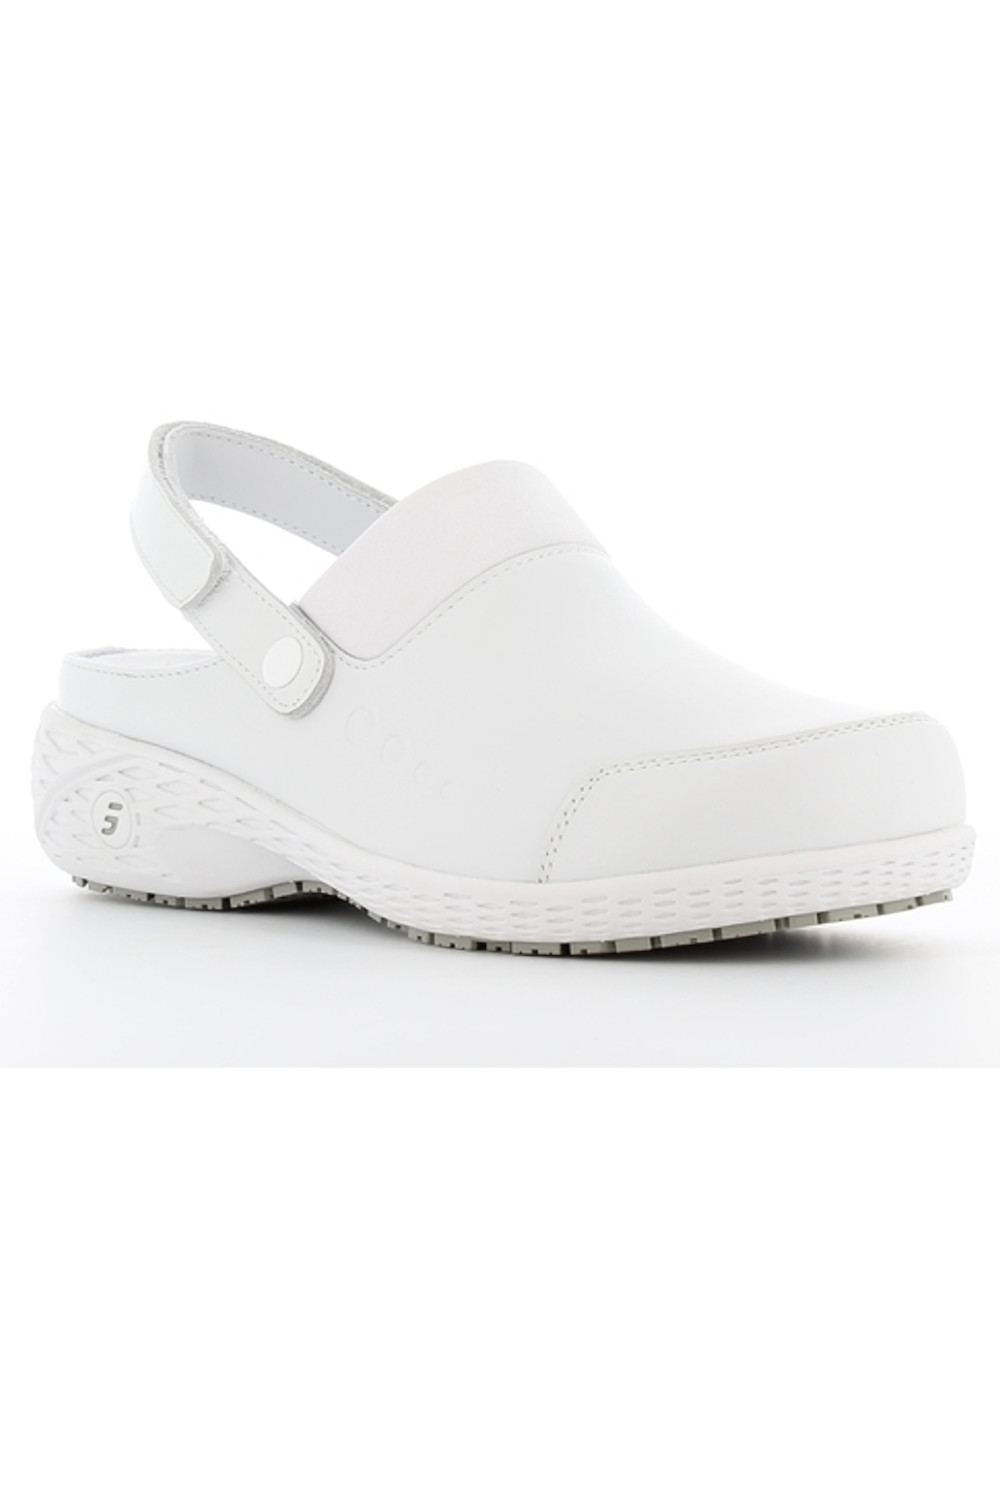 Buty damskie SHEILA obuwie medyczne kolor biały